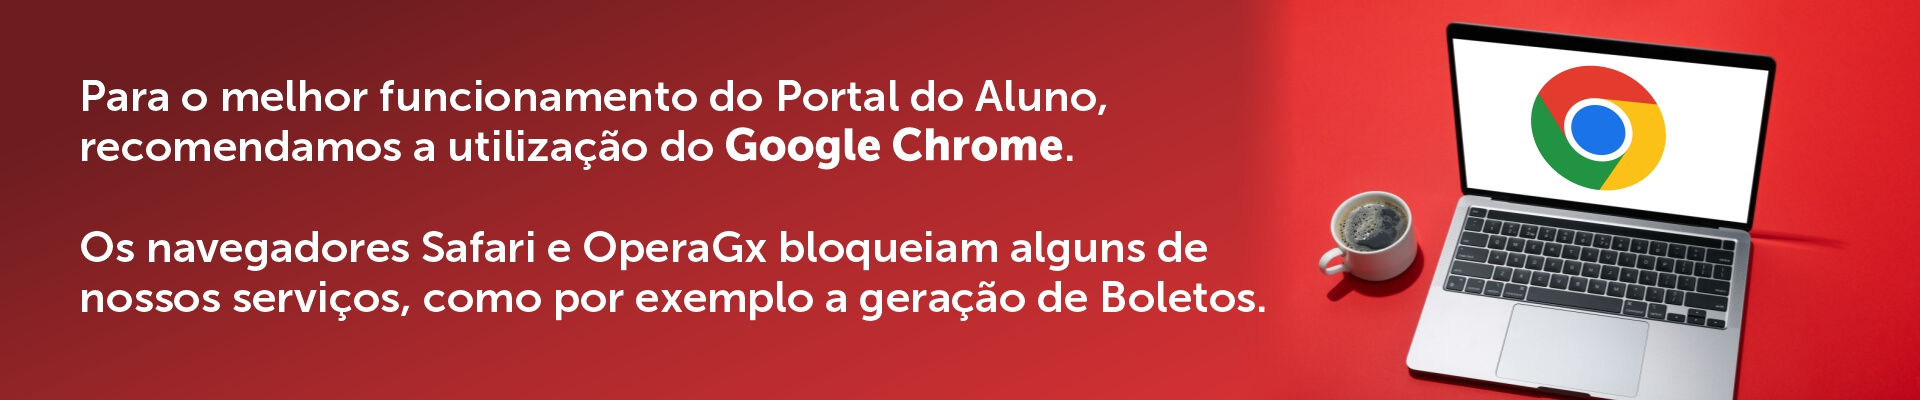 Portal do Aluno - Chrome (1)